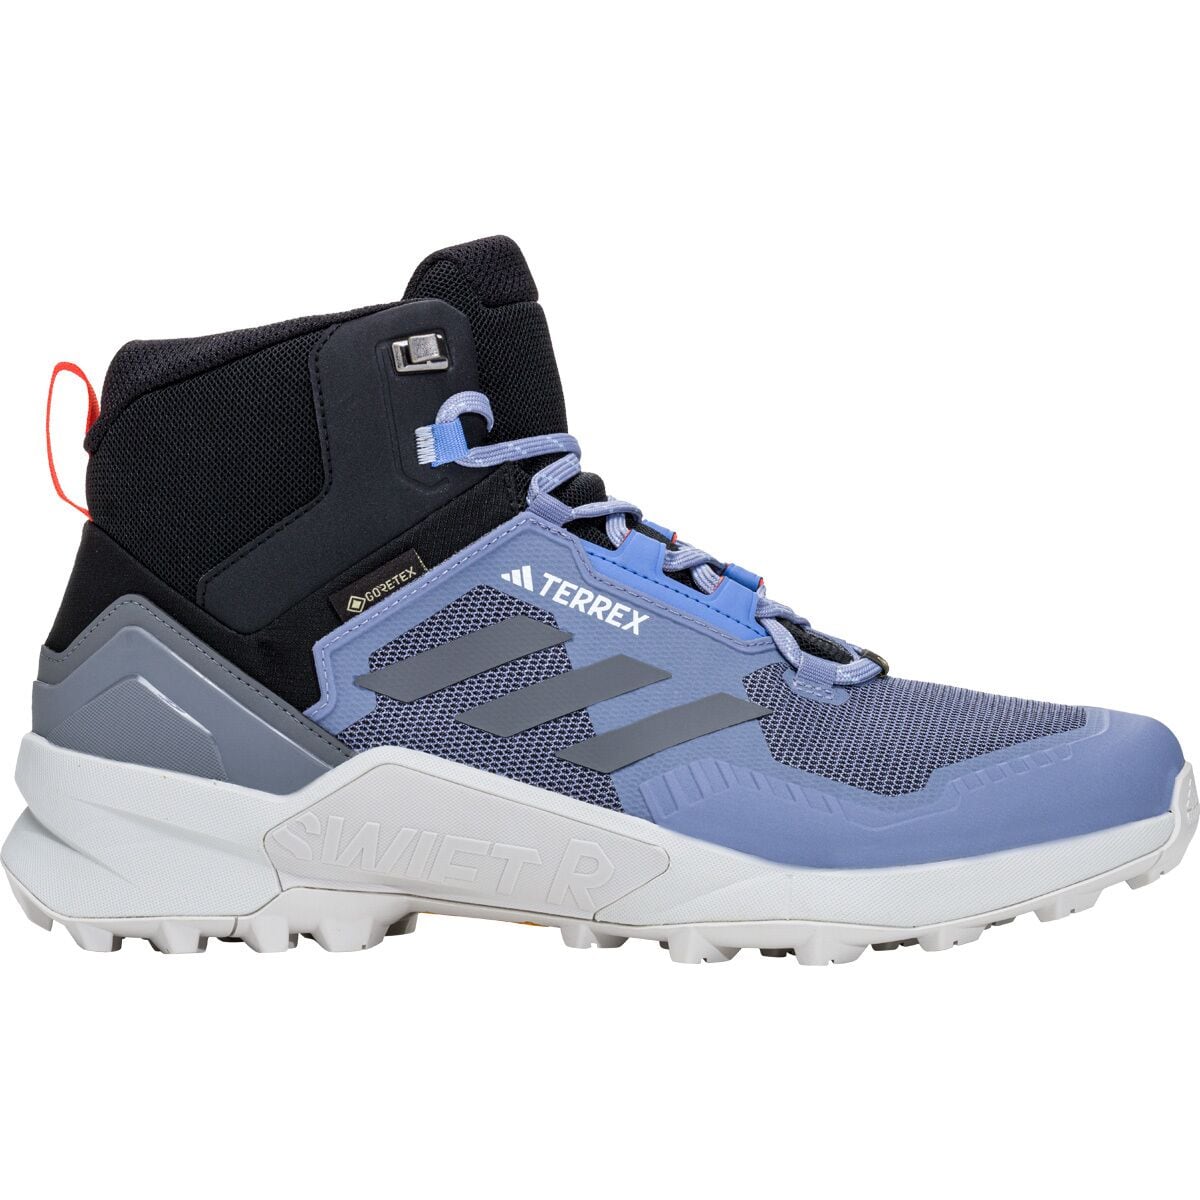 Continuar Rápido Comprensión Adidas TERREX Terrex Swift R2 Mid GTX Hiking Shoe - Men's - Footwear